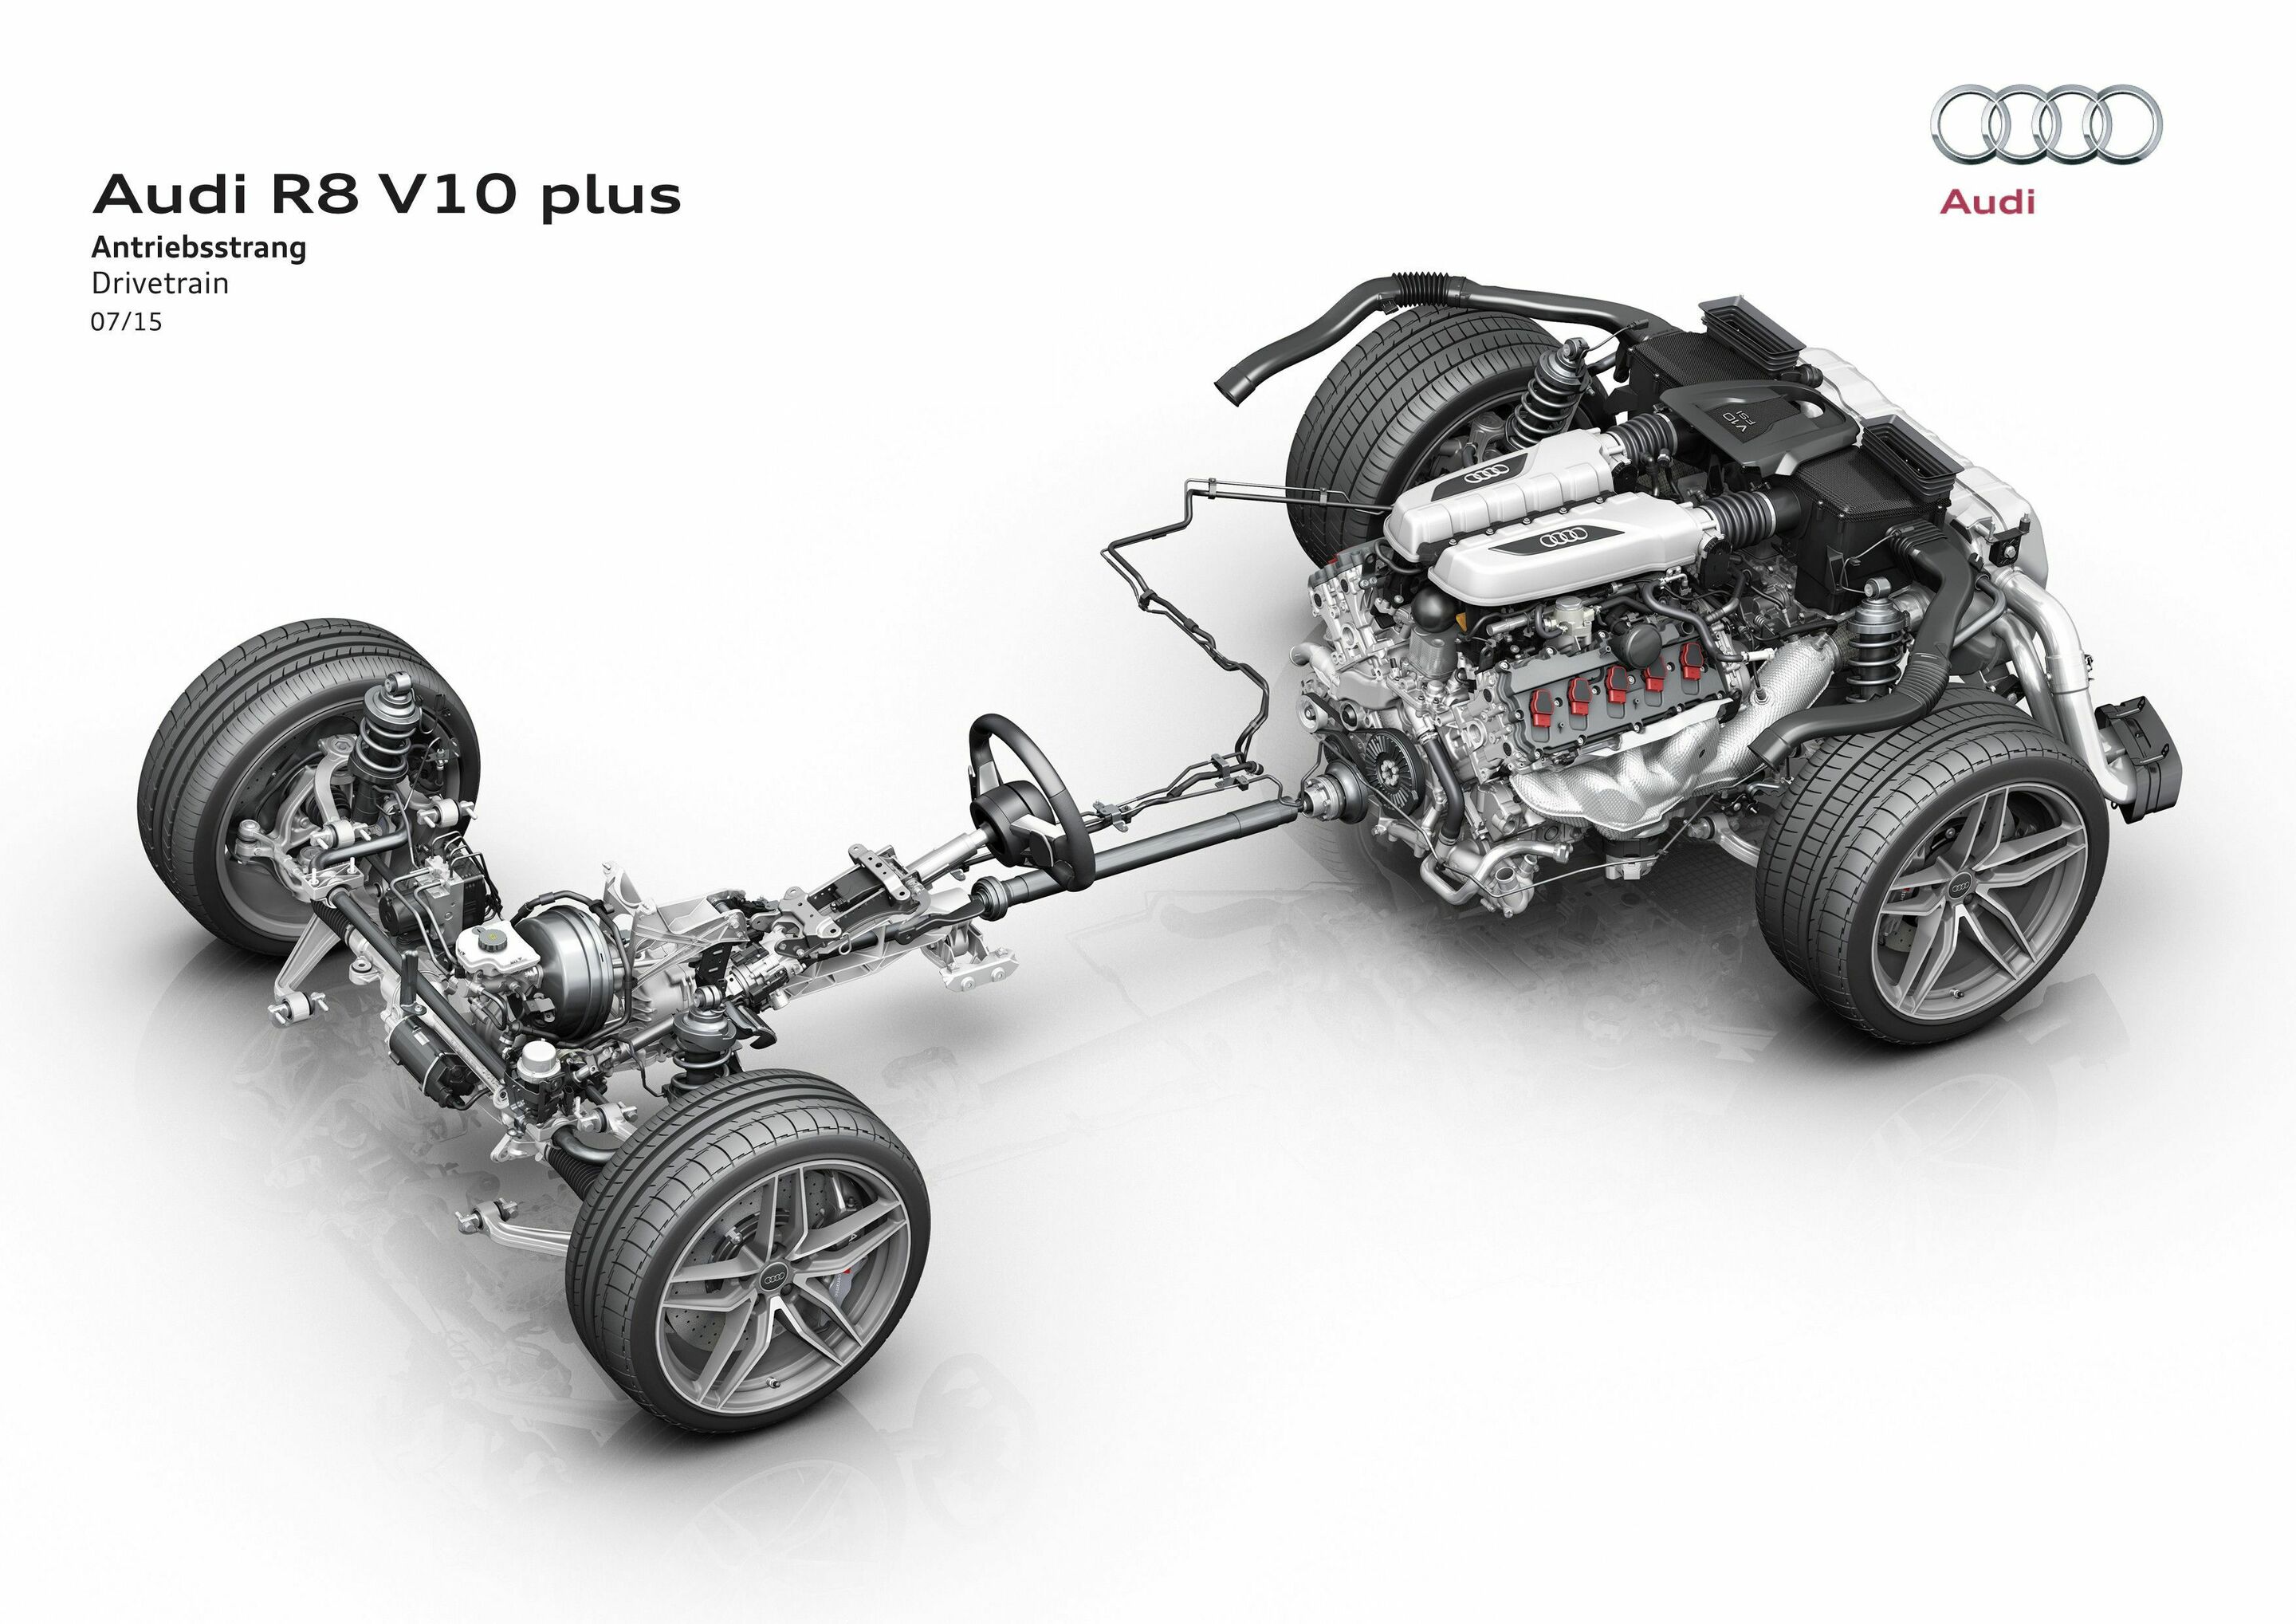 Audi R8 V10 plus: Antriebsstrang